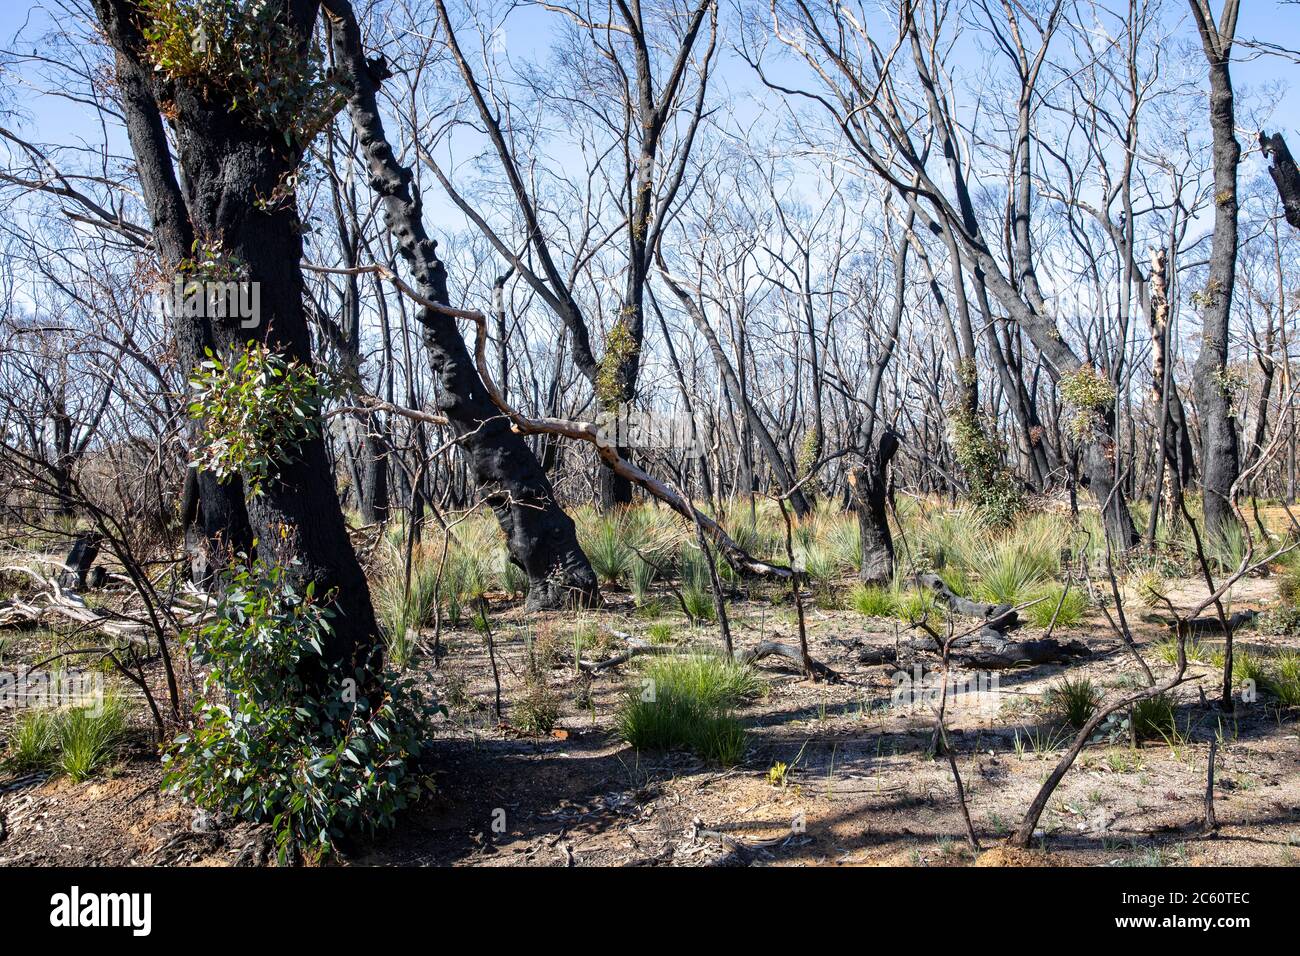 2020 fuochi d'arresto australiani hanno danneggiato grandi parti del parco nazionale delle montagne blu nel NSW, germogli verdi di recupero nella vita delle piante 2020 luglio, Australia Foto Stock